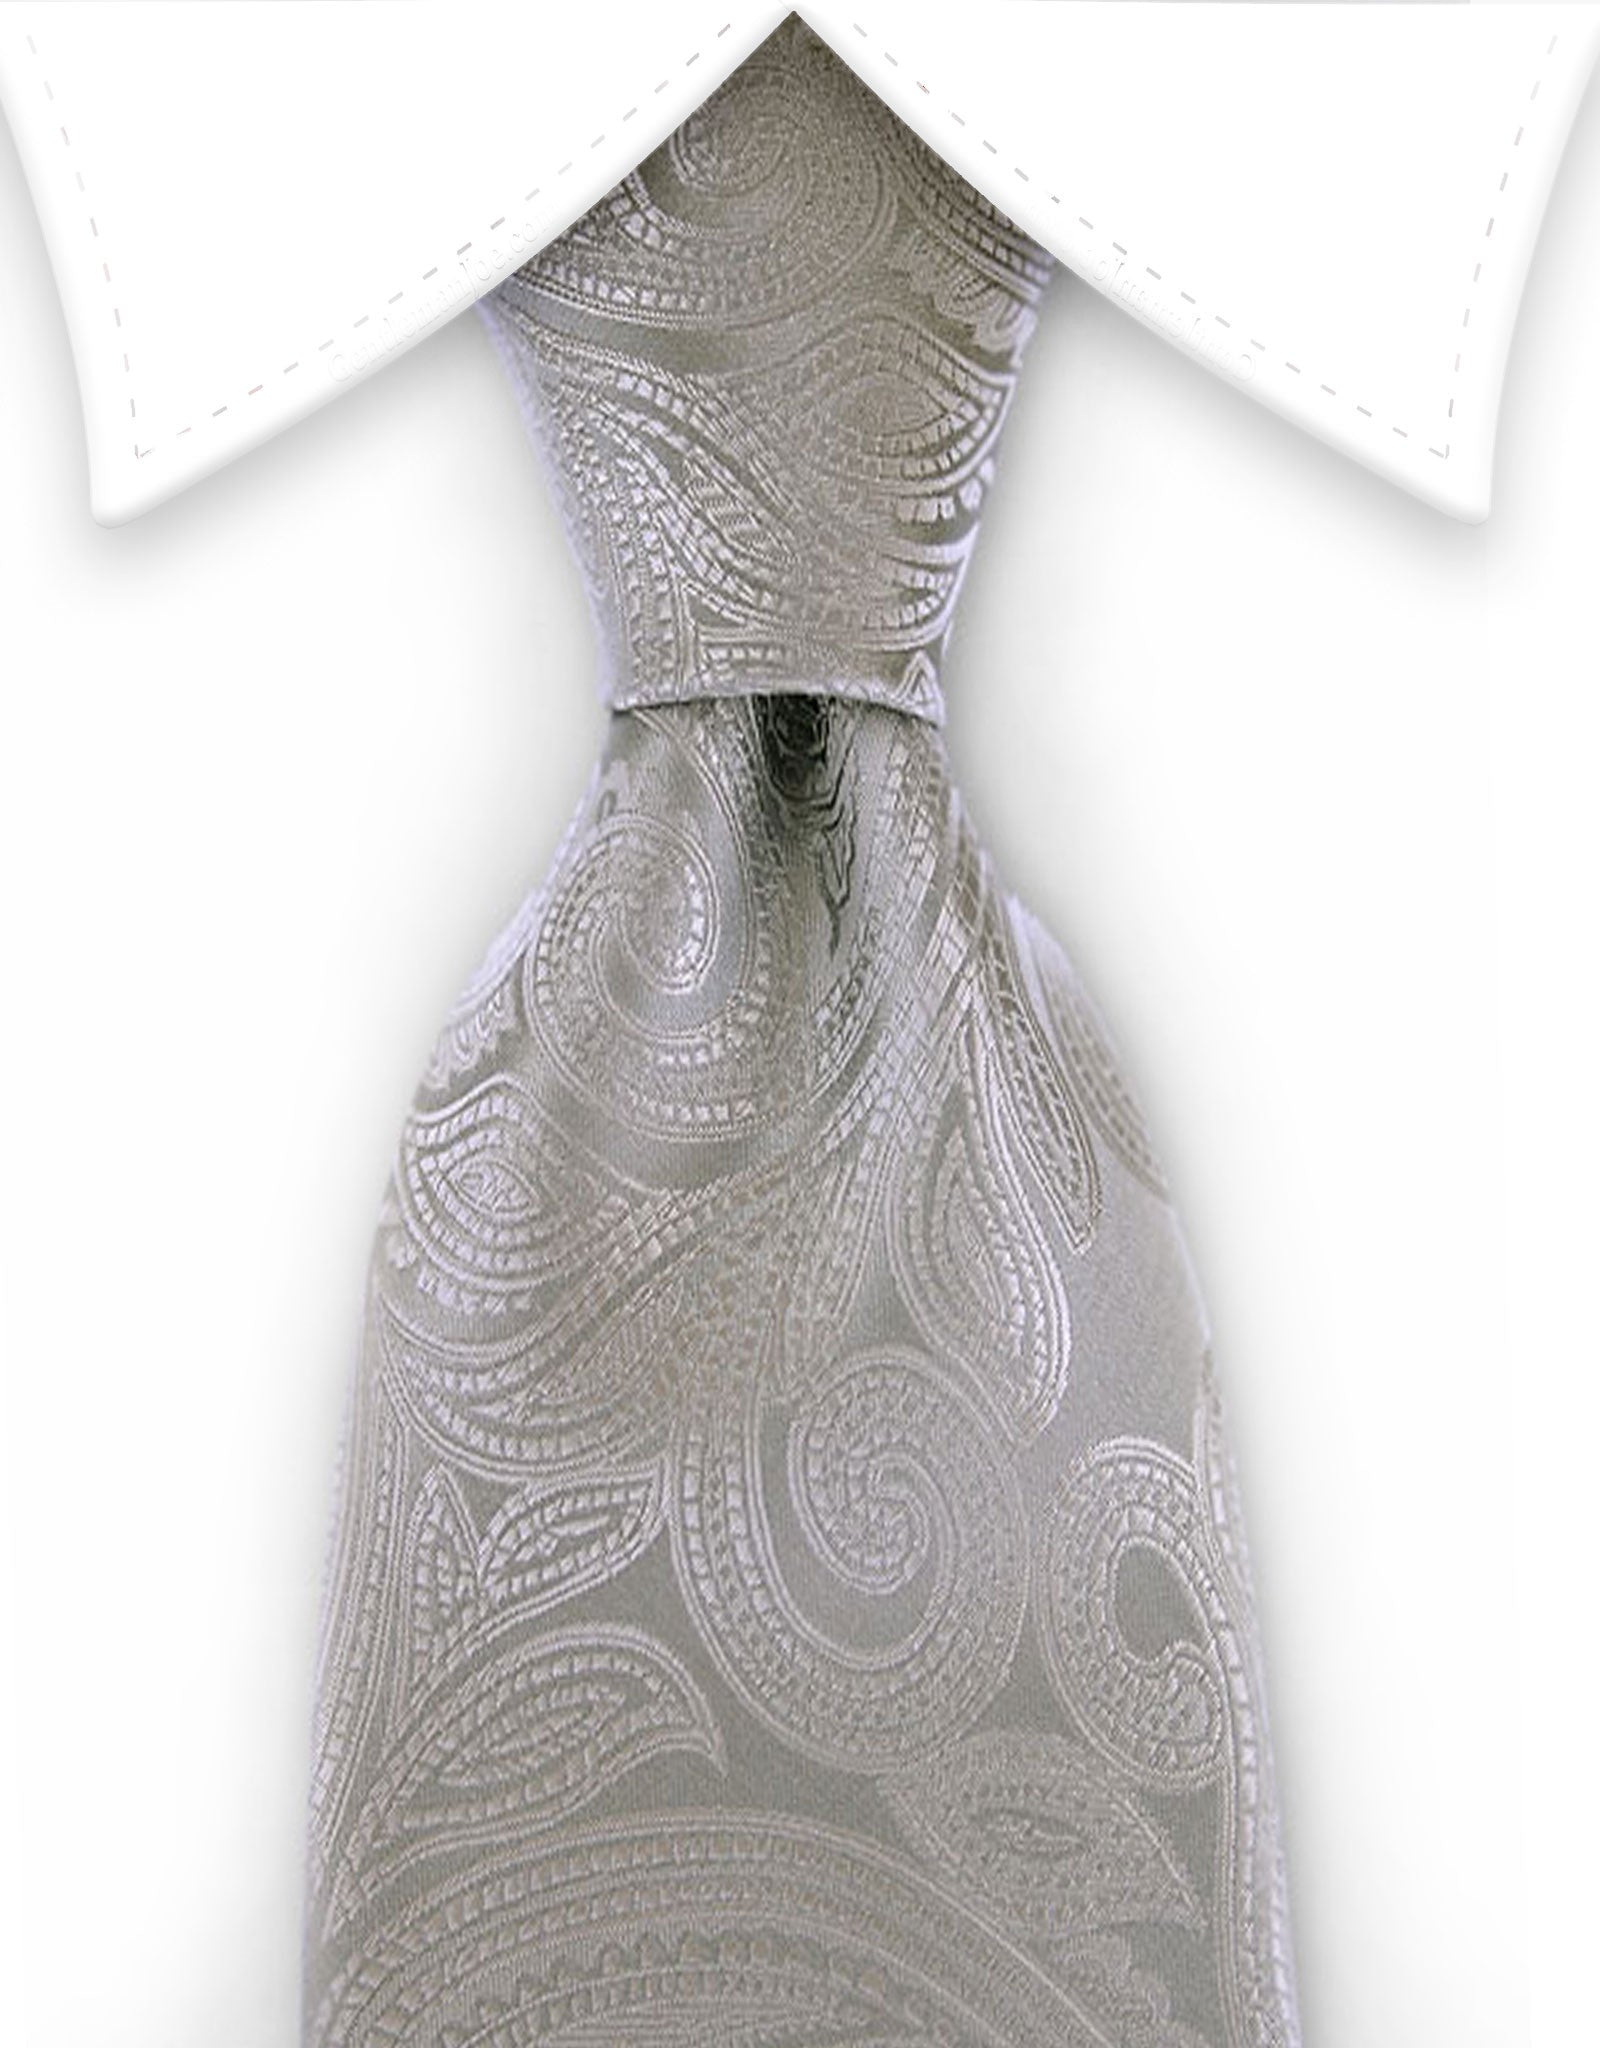 Silver paisley tie